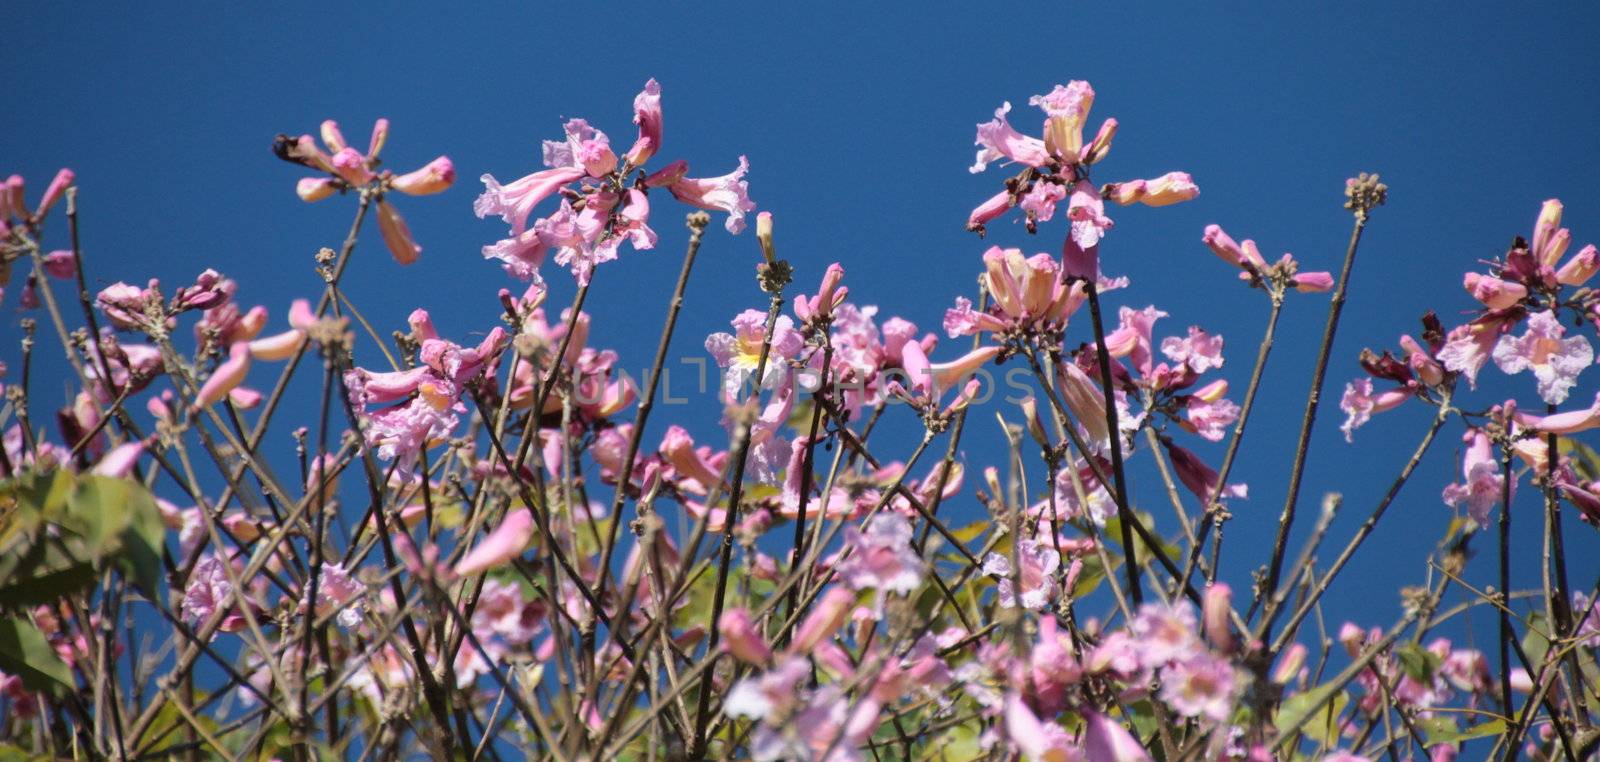 Pink flowers against blue sky by KirbyWalkerPhotos